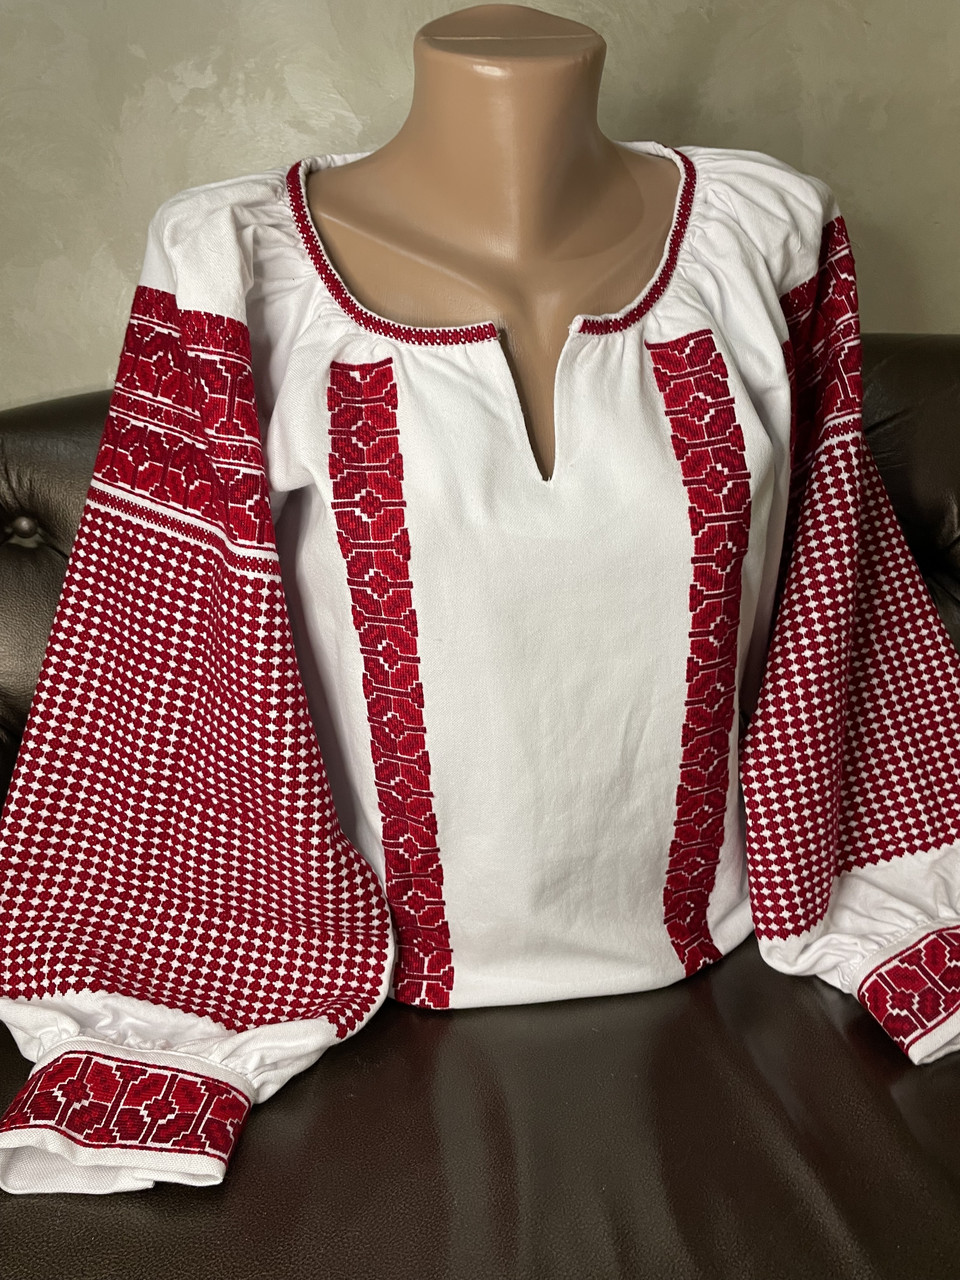 Покутська сорочка. Жіноча блузка, вишиванка ручної роботи в покутському стилі